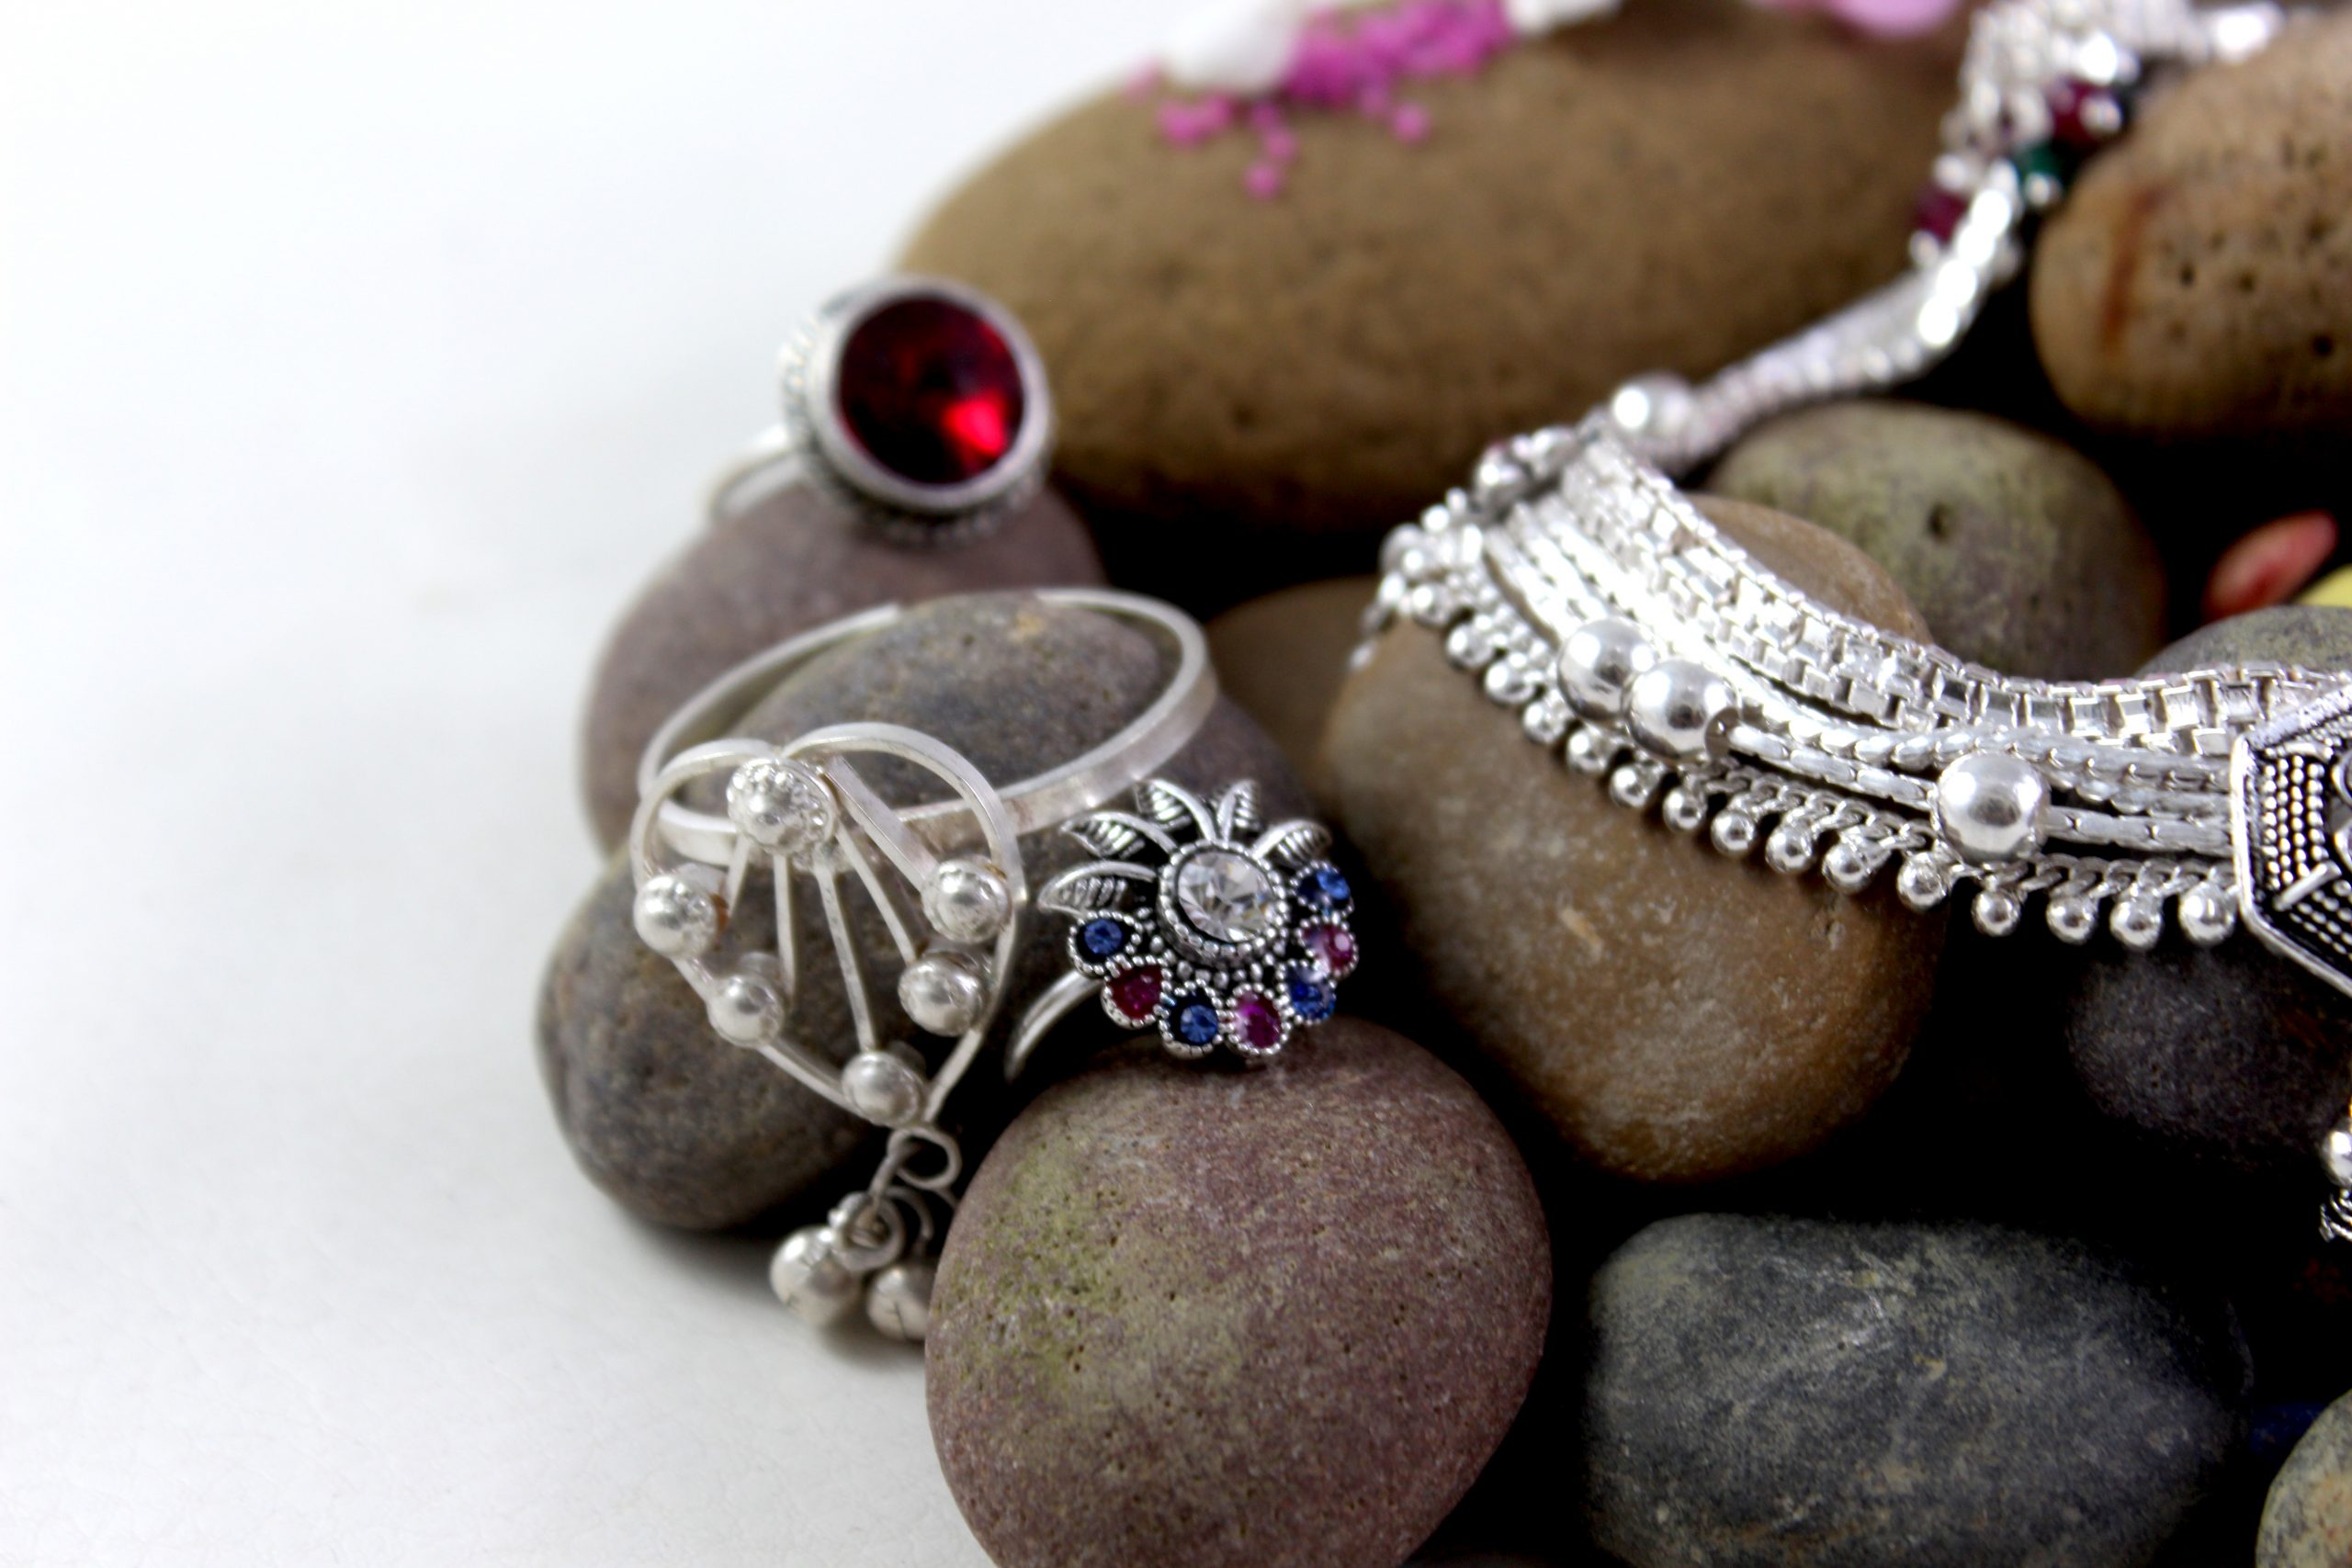 Jewelry on stones